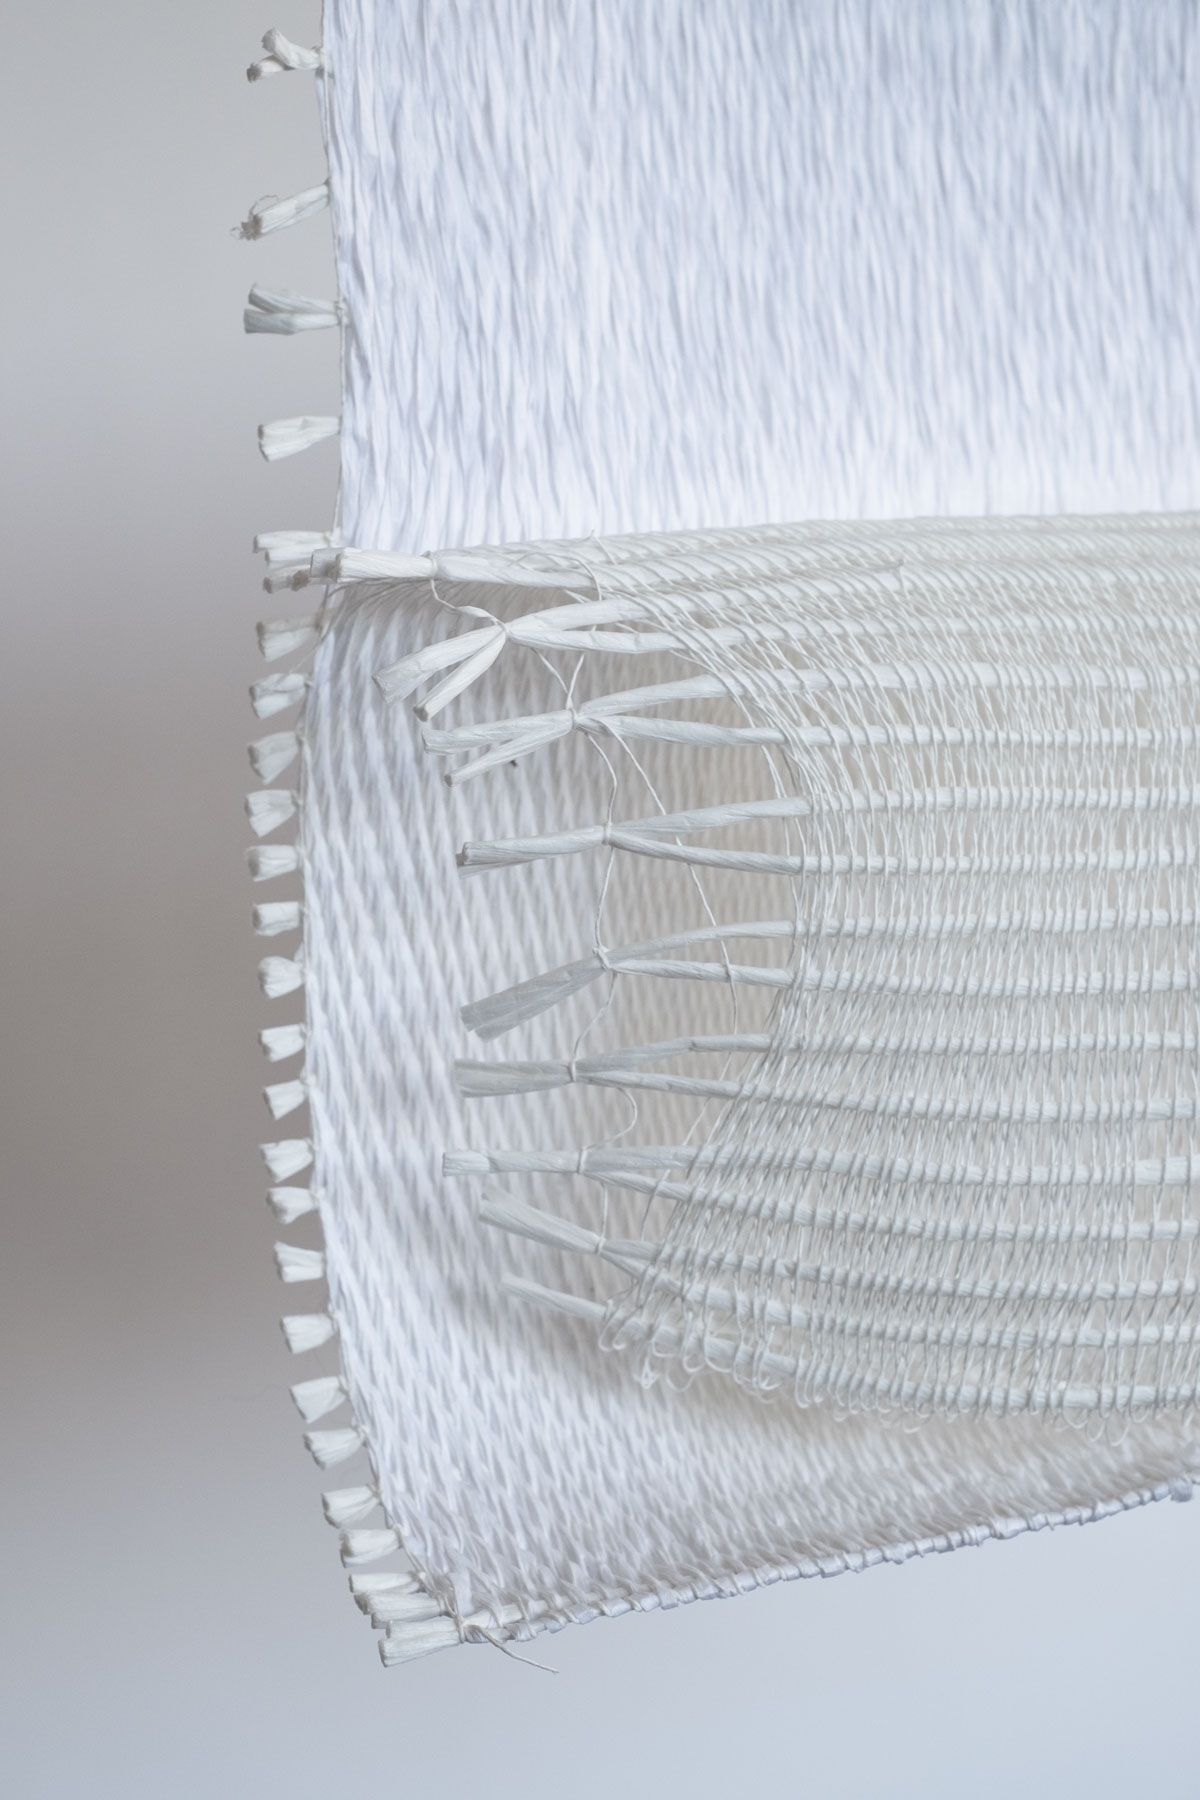 Duplice Svolta Bidirezionale (2020) 54x37x14 cm paper yarn